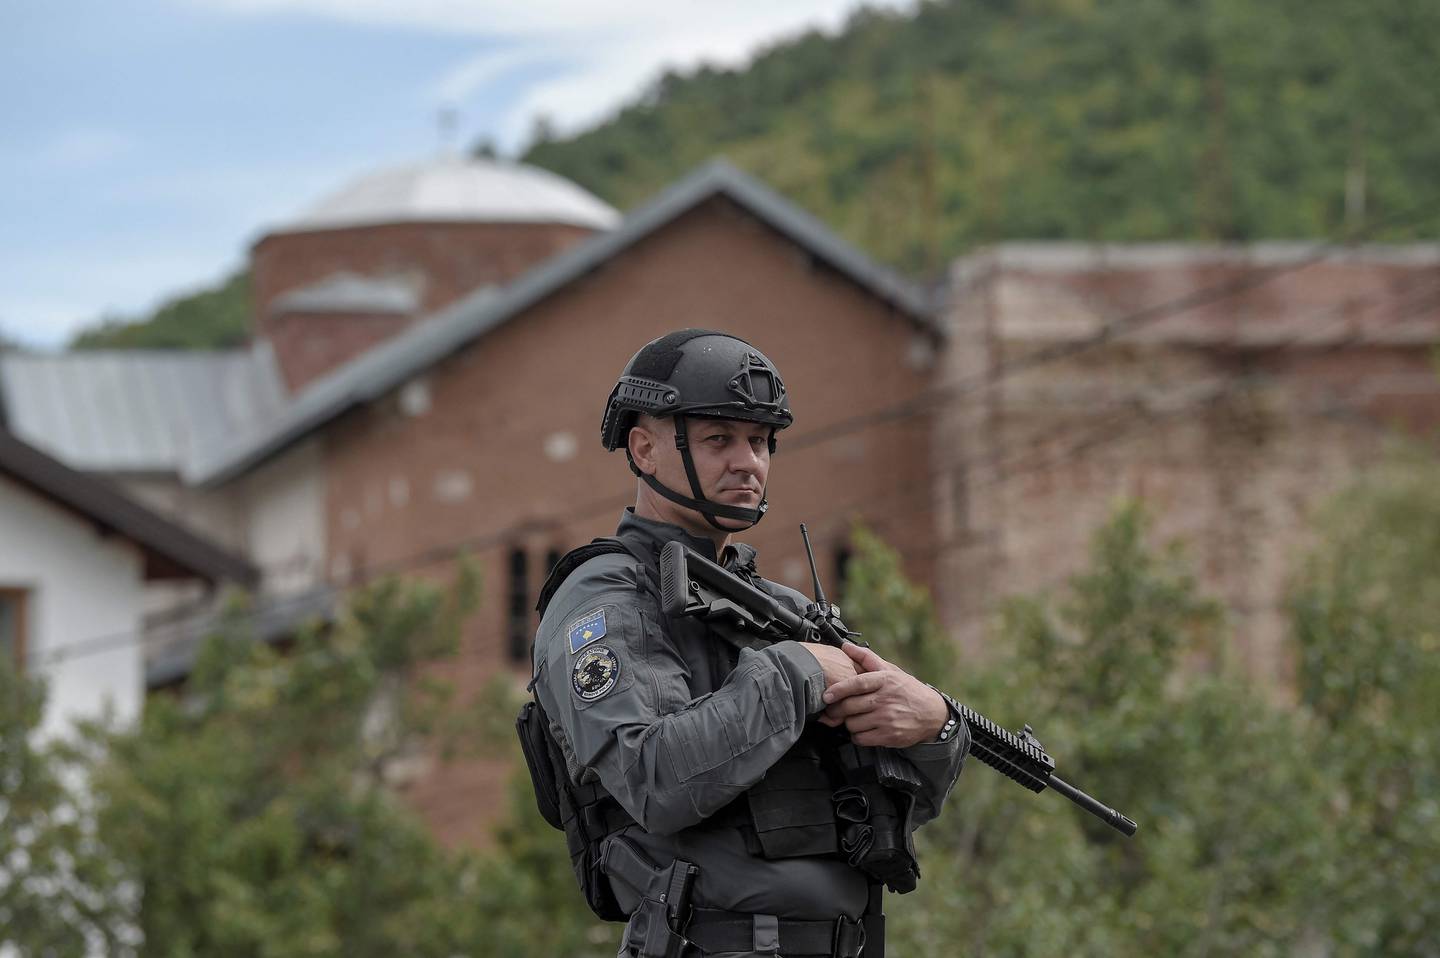 Et medlem av Kosovos spesialenhet står vakt i området nord i Kosovo etter serbisk milita angrep politiet i regionen, og en politimann ble drep.